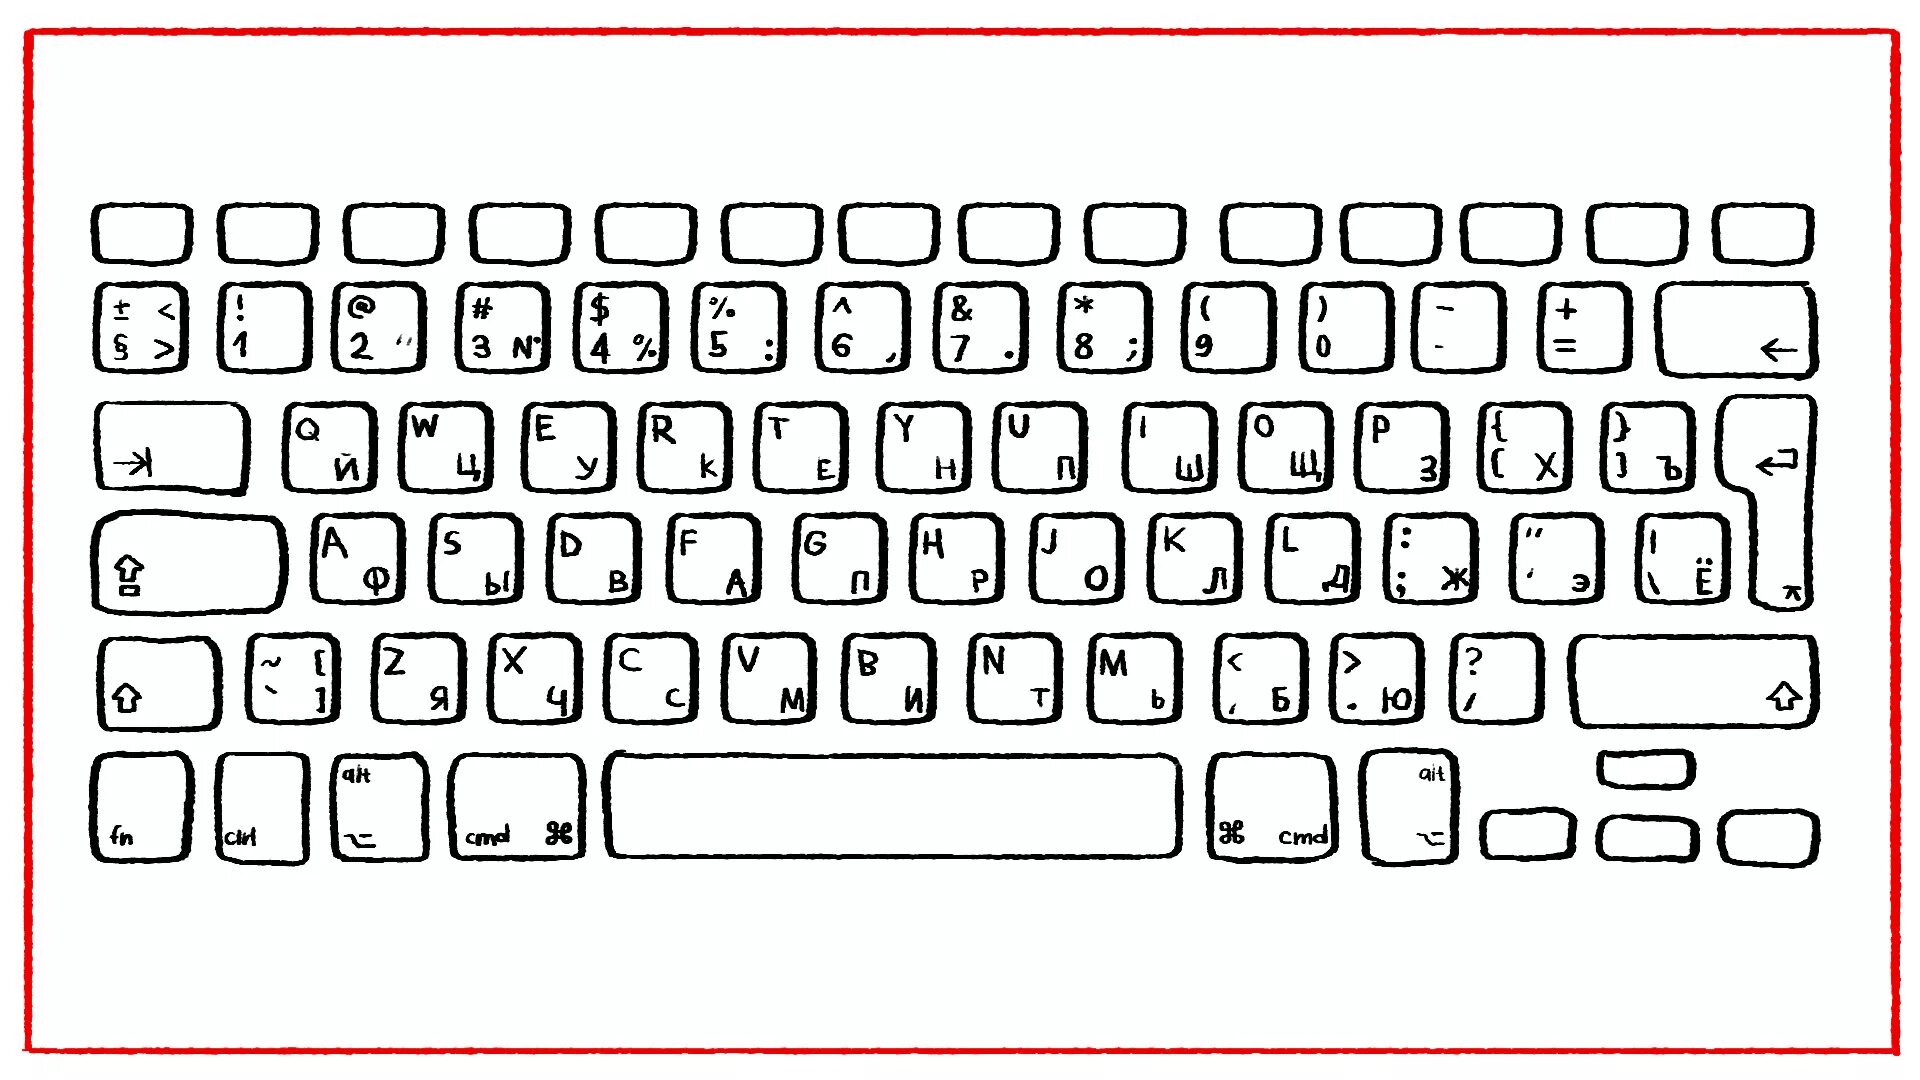 Компьютерная клавиатура раскладка русская и английская. Распечатка клавиатуры компьютера. Клавиатура для раскрашивания. Клавиатура компьютера раскраска. Неправильная раскладка